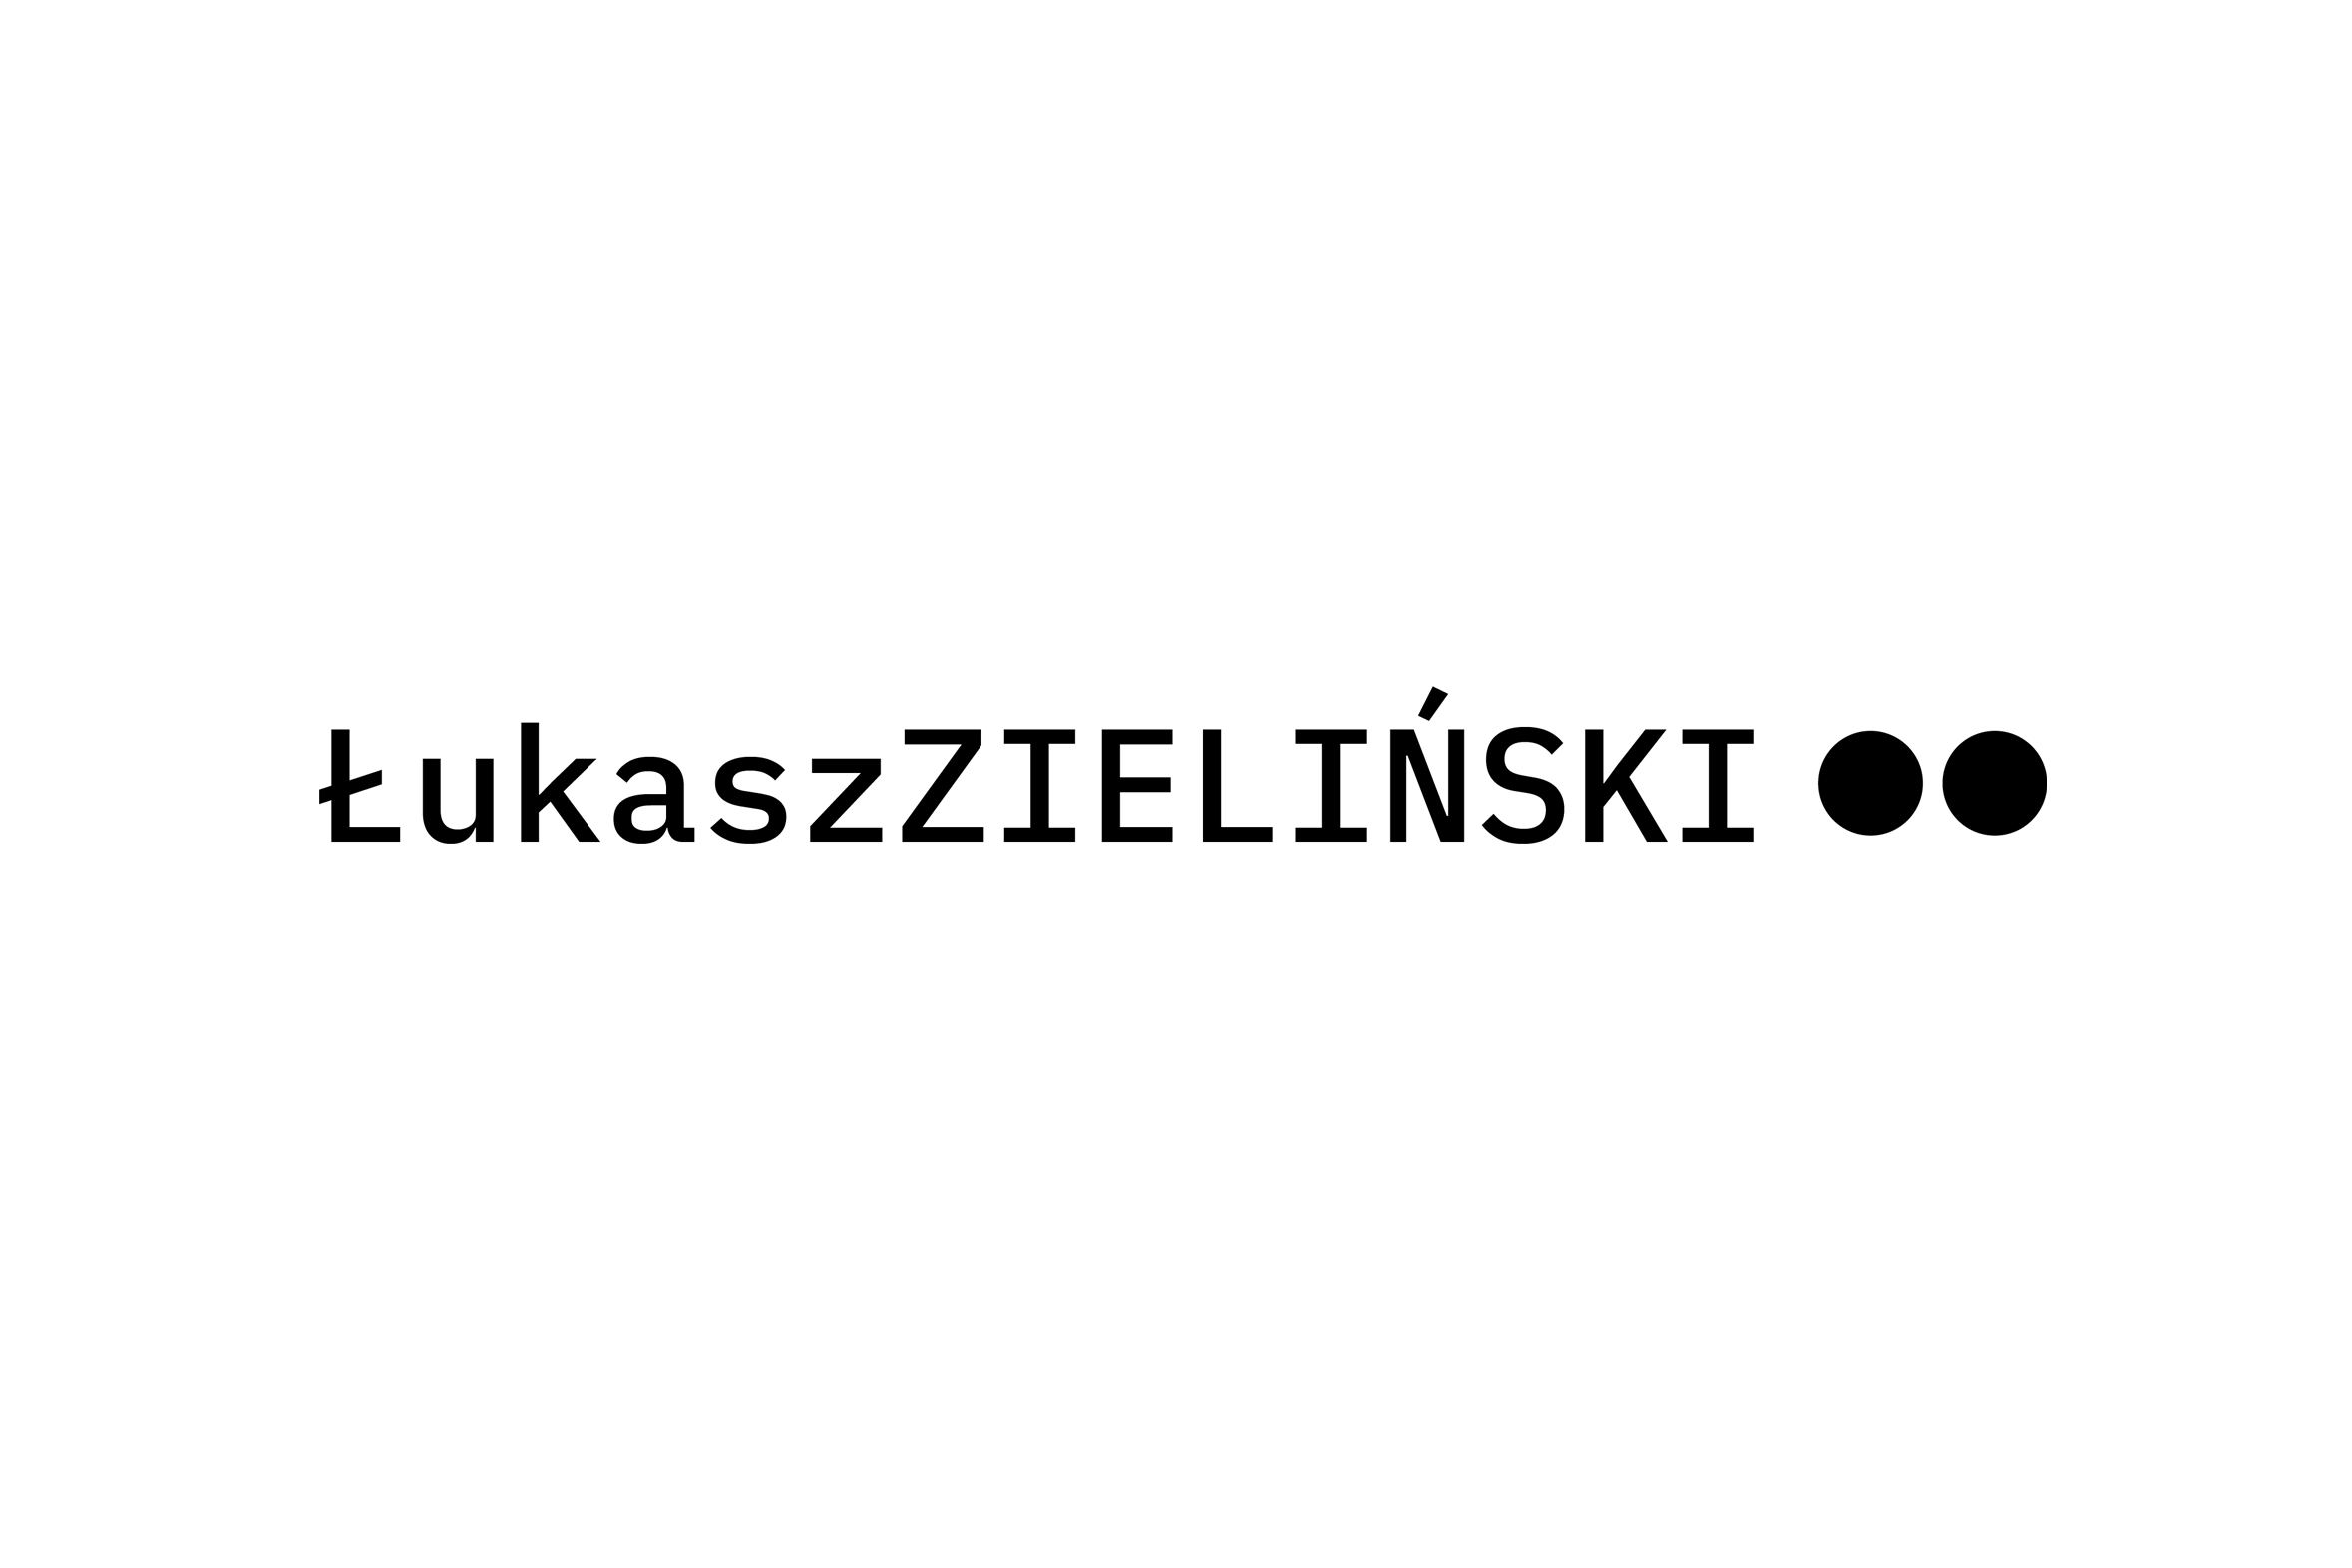 Projekt logo naukowca i blogera Łukasza Zielińskiego